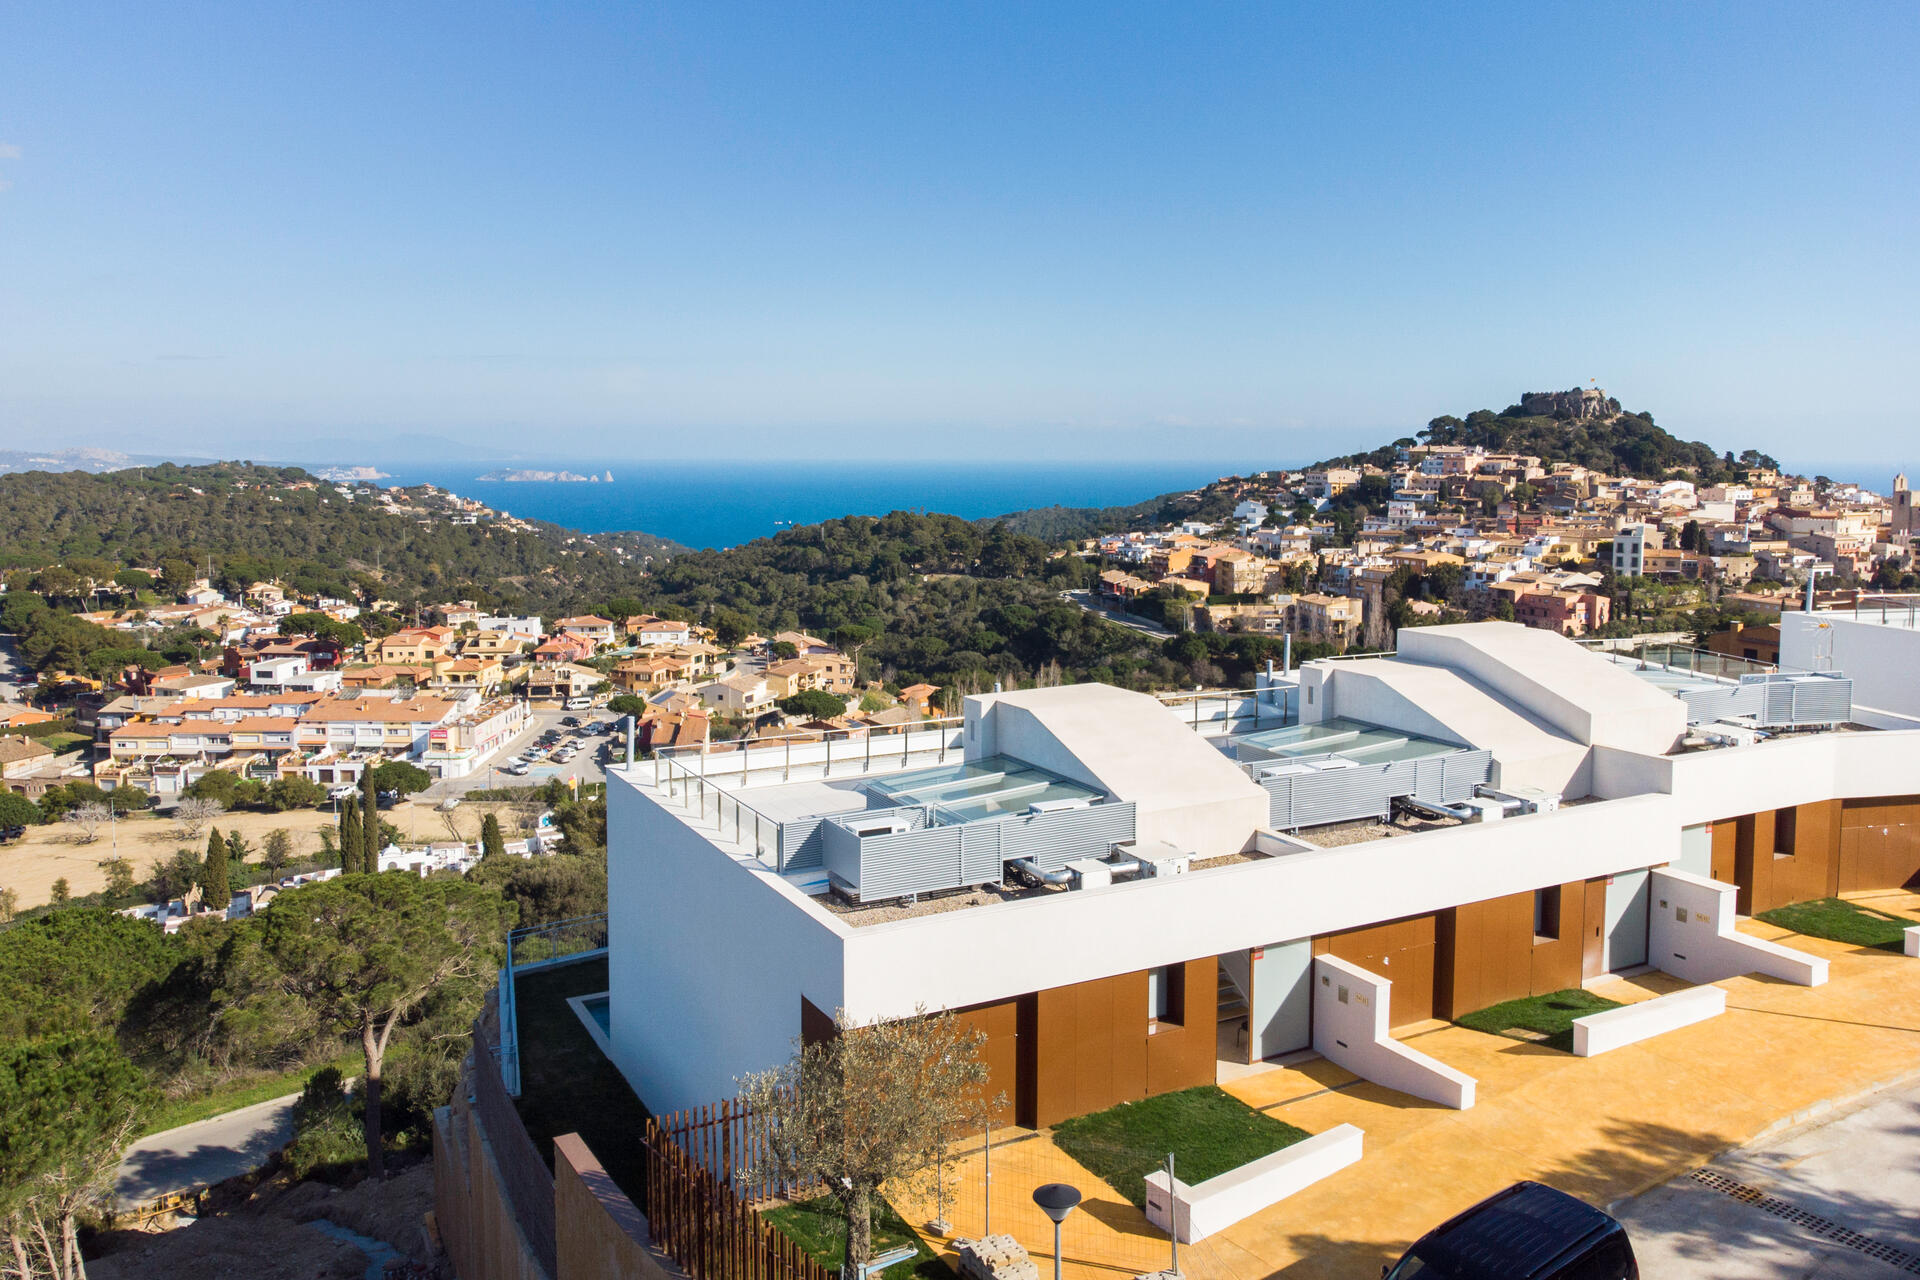 Traumhaus an der Costa Brava kaufen - Villen / Wohnung mit Meerblick in Spanien an der Costa Brava